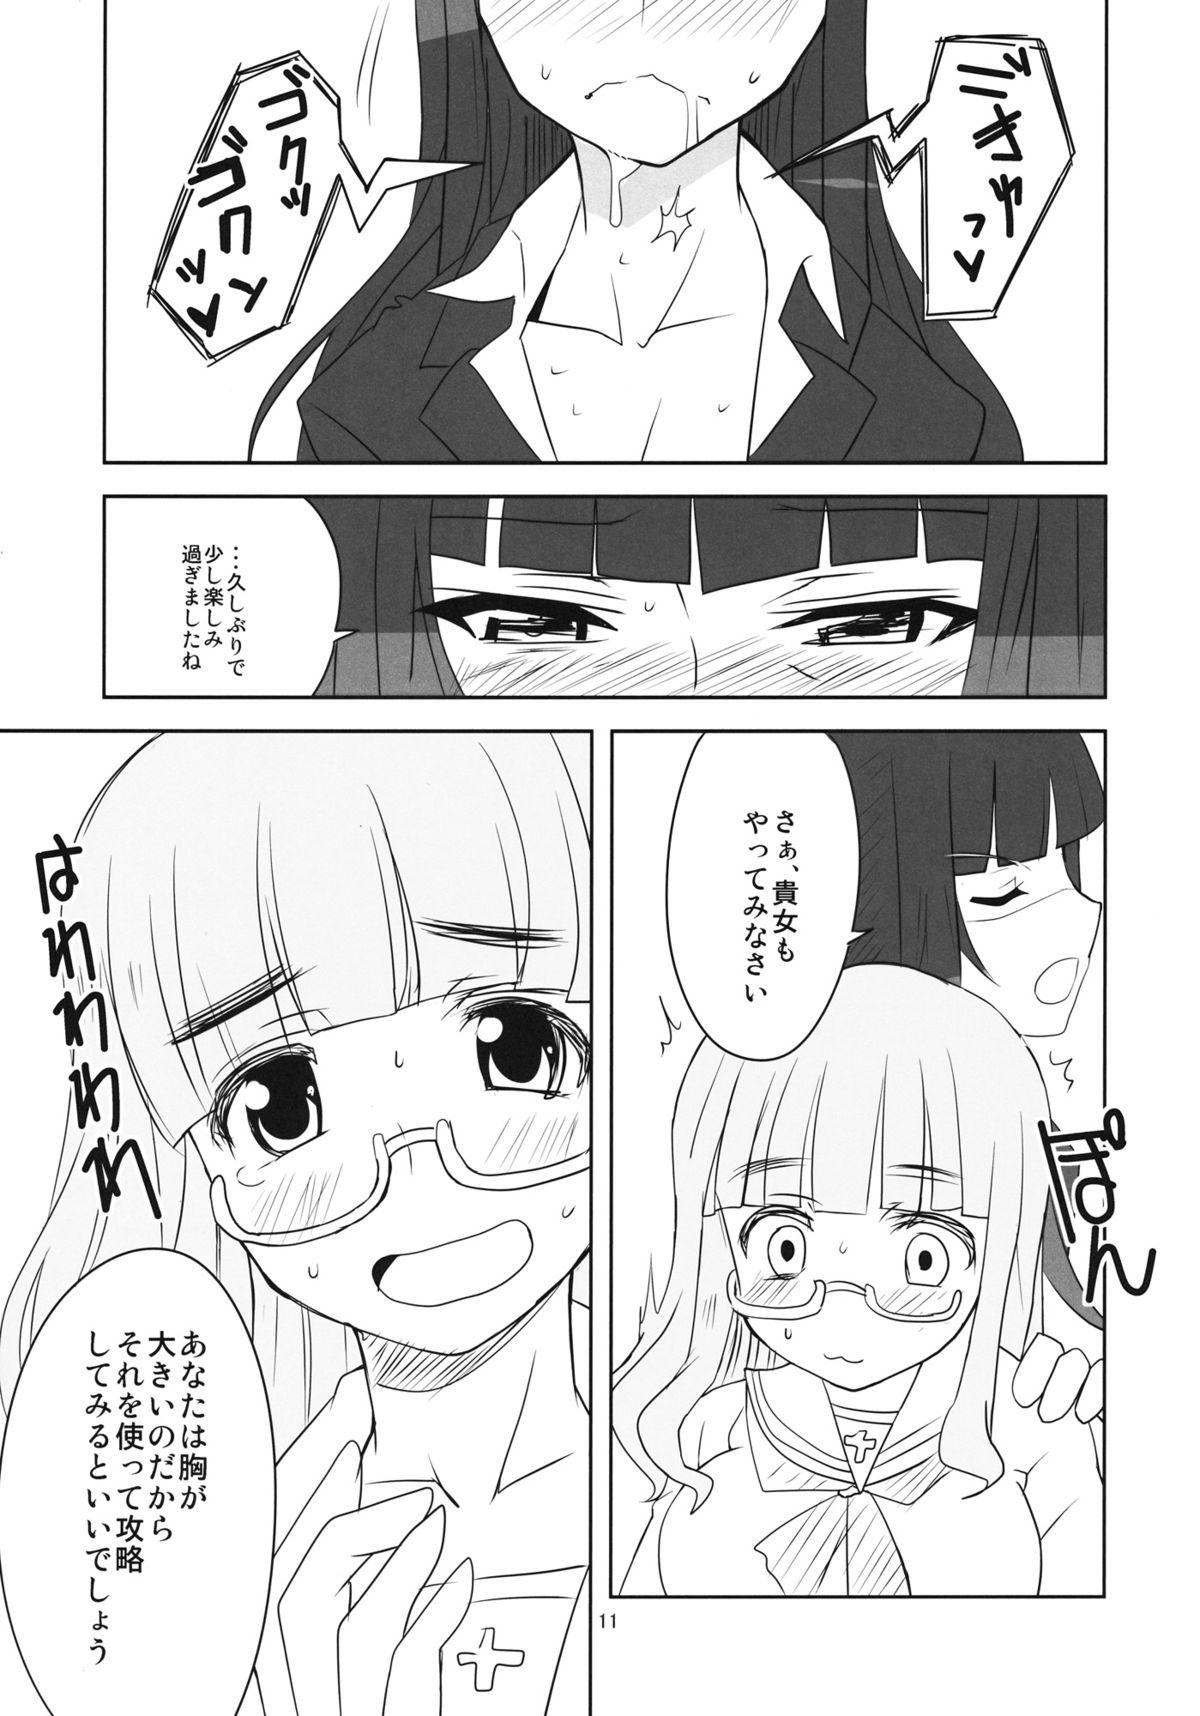 Str8 Yoru no Nishizumi ryuu - Girls und panzer Parties - Page 12